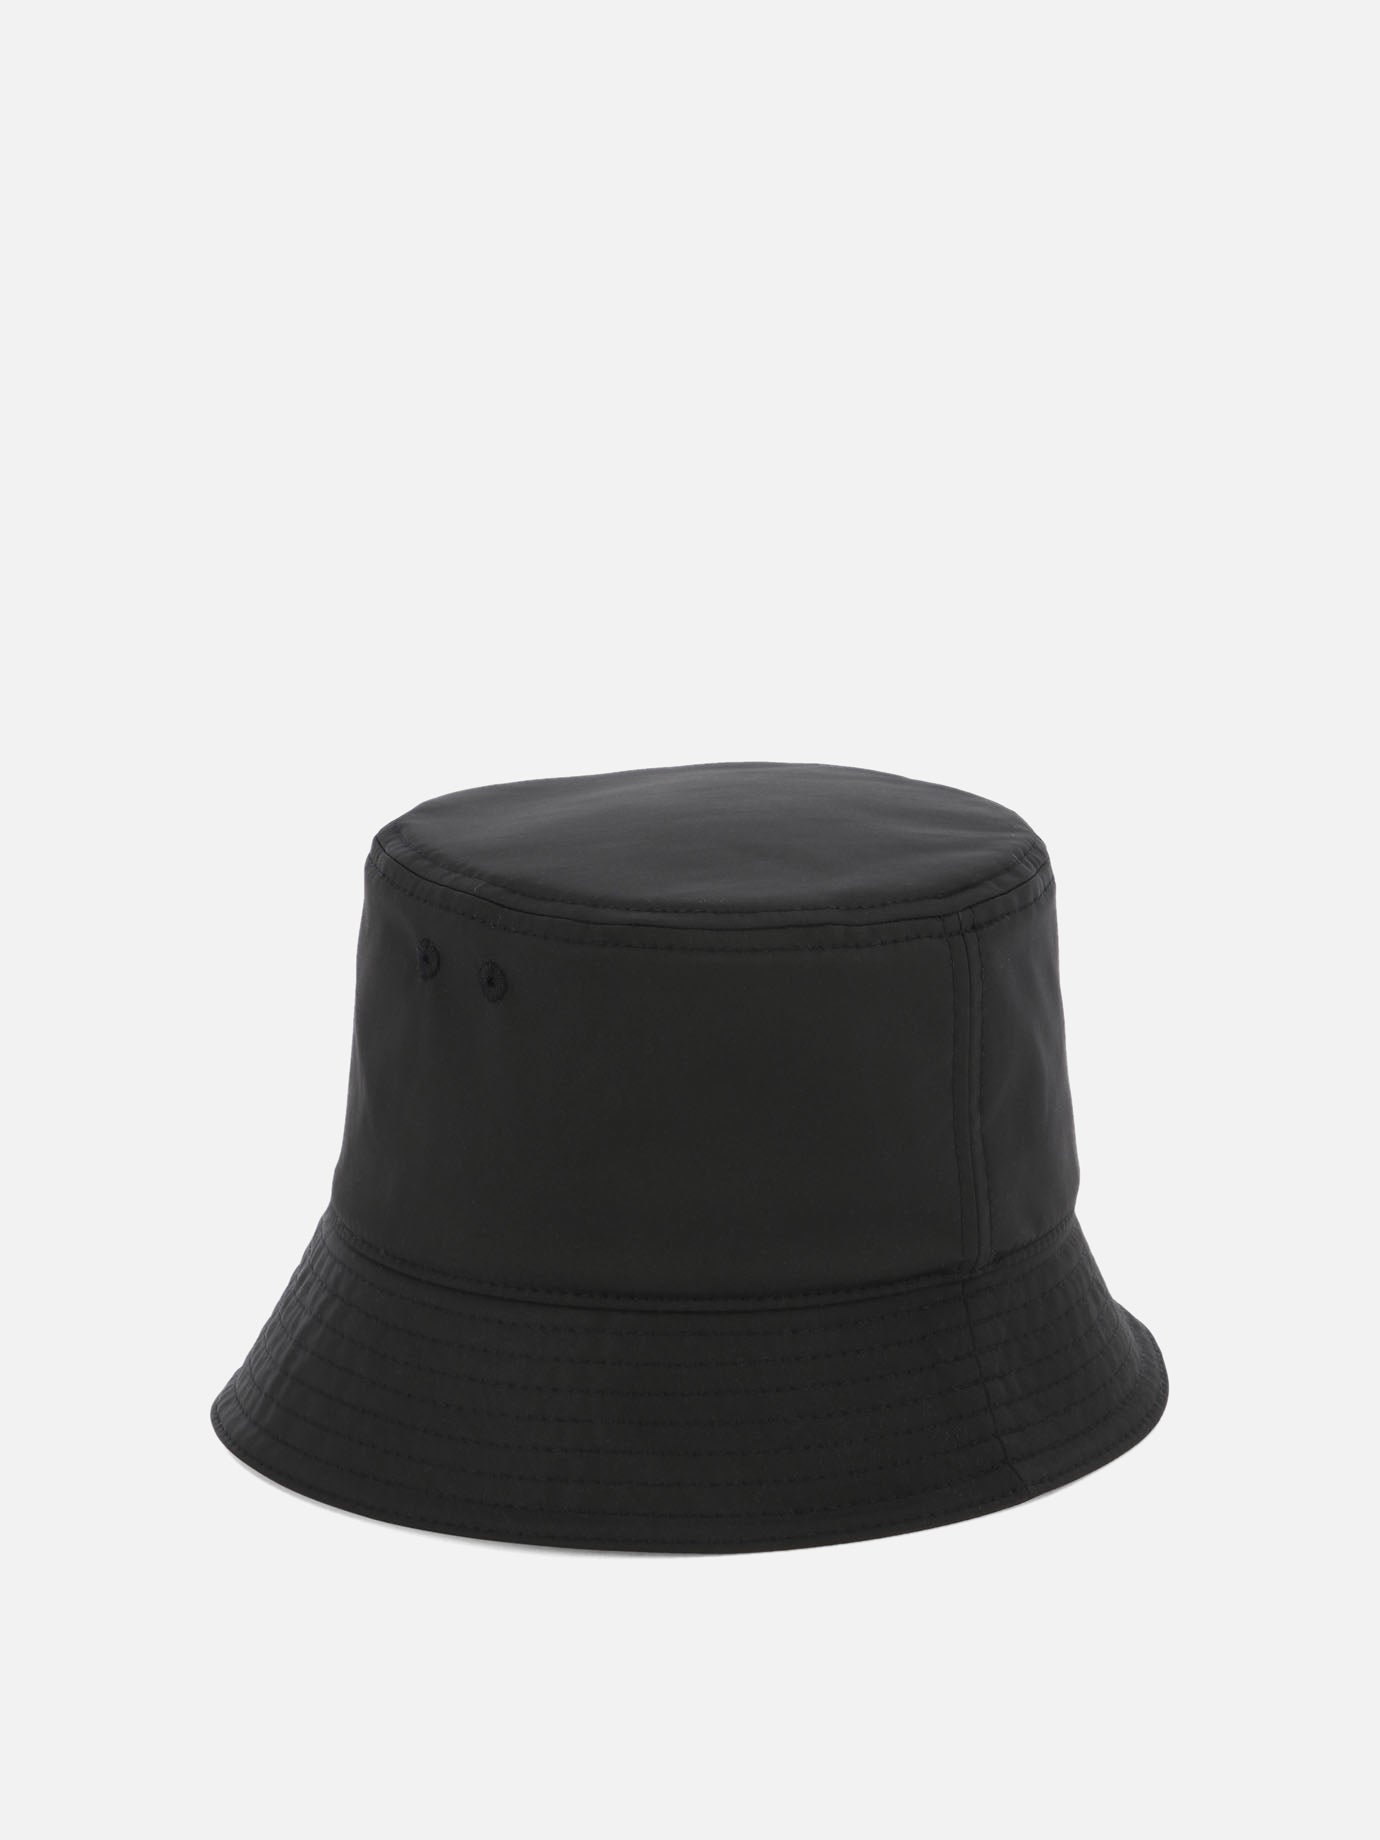 "VLogo" bucket hat